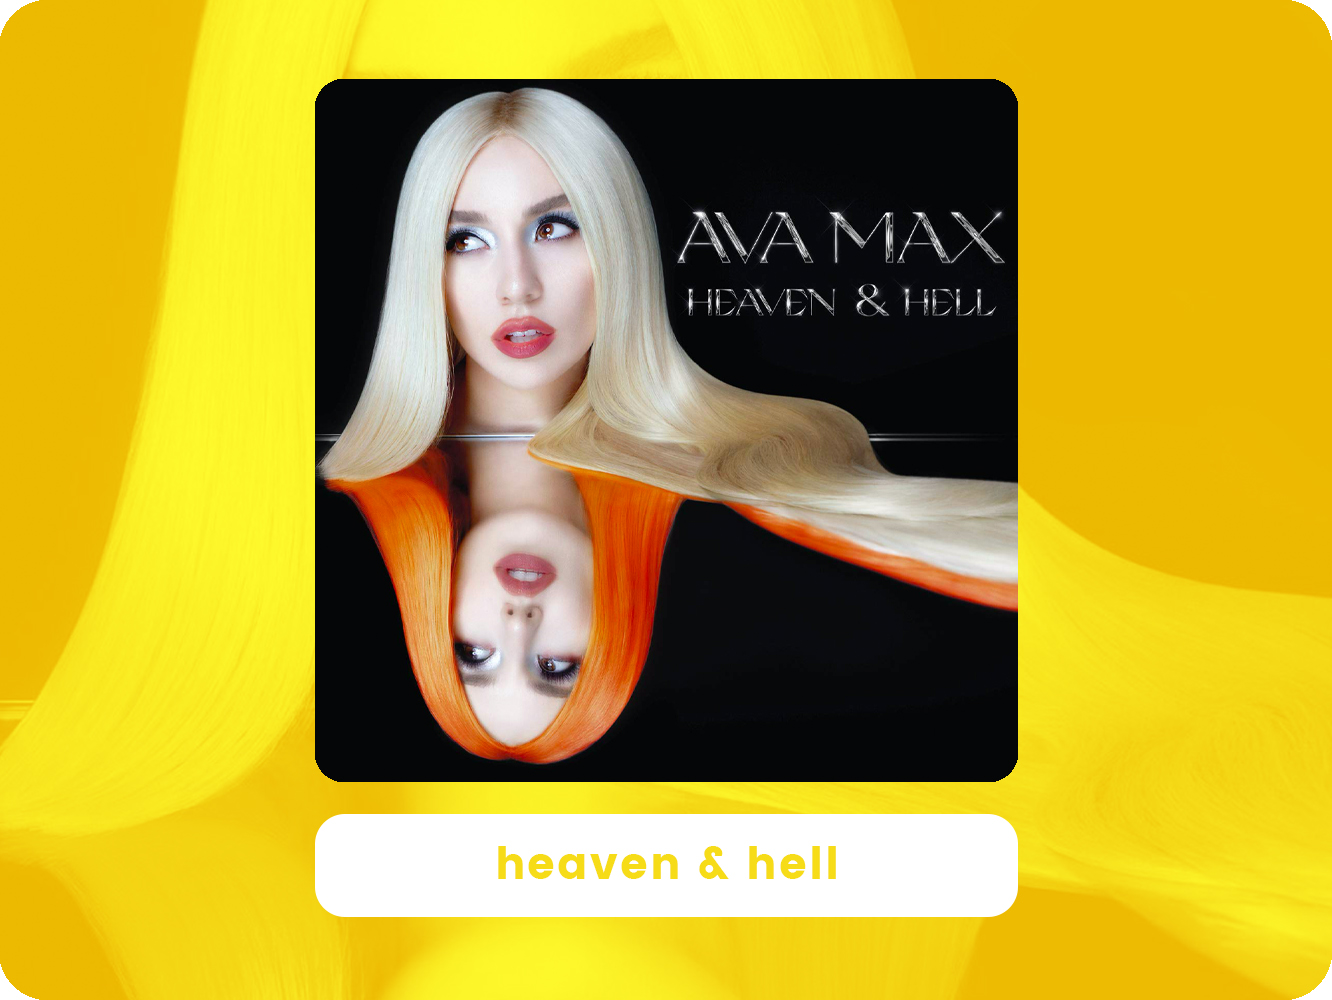  ‘Heaven & Hell’ de Ava Max funciona mejor en pequeñas píldoras y sin tomarse demasiado en serio